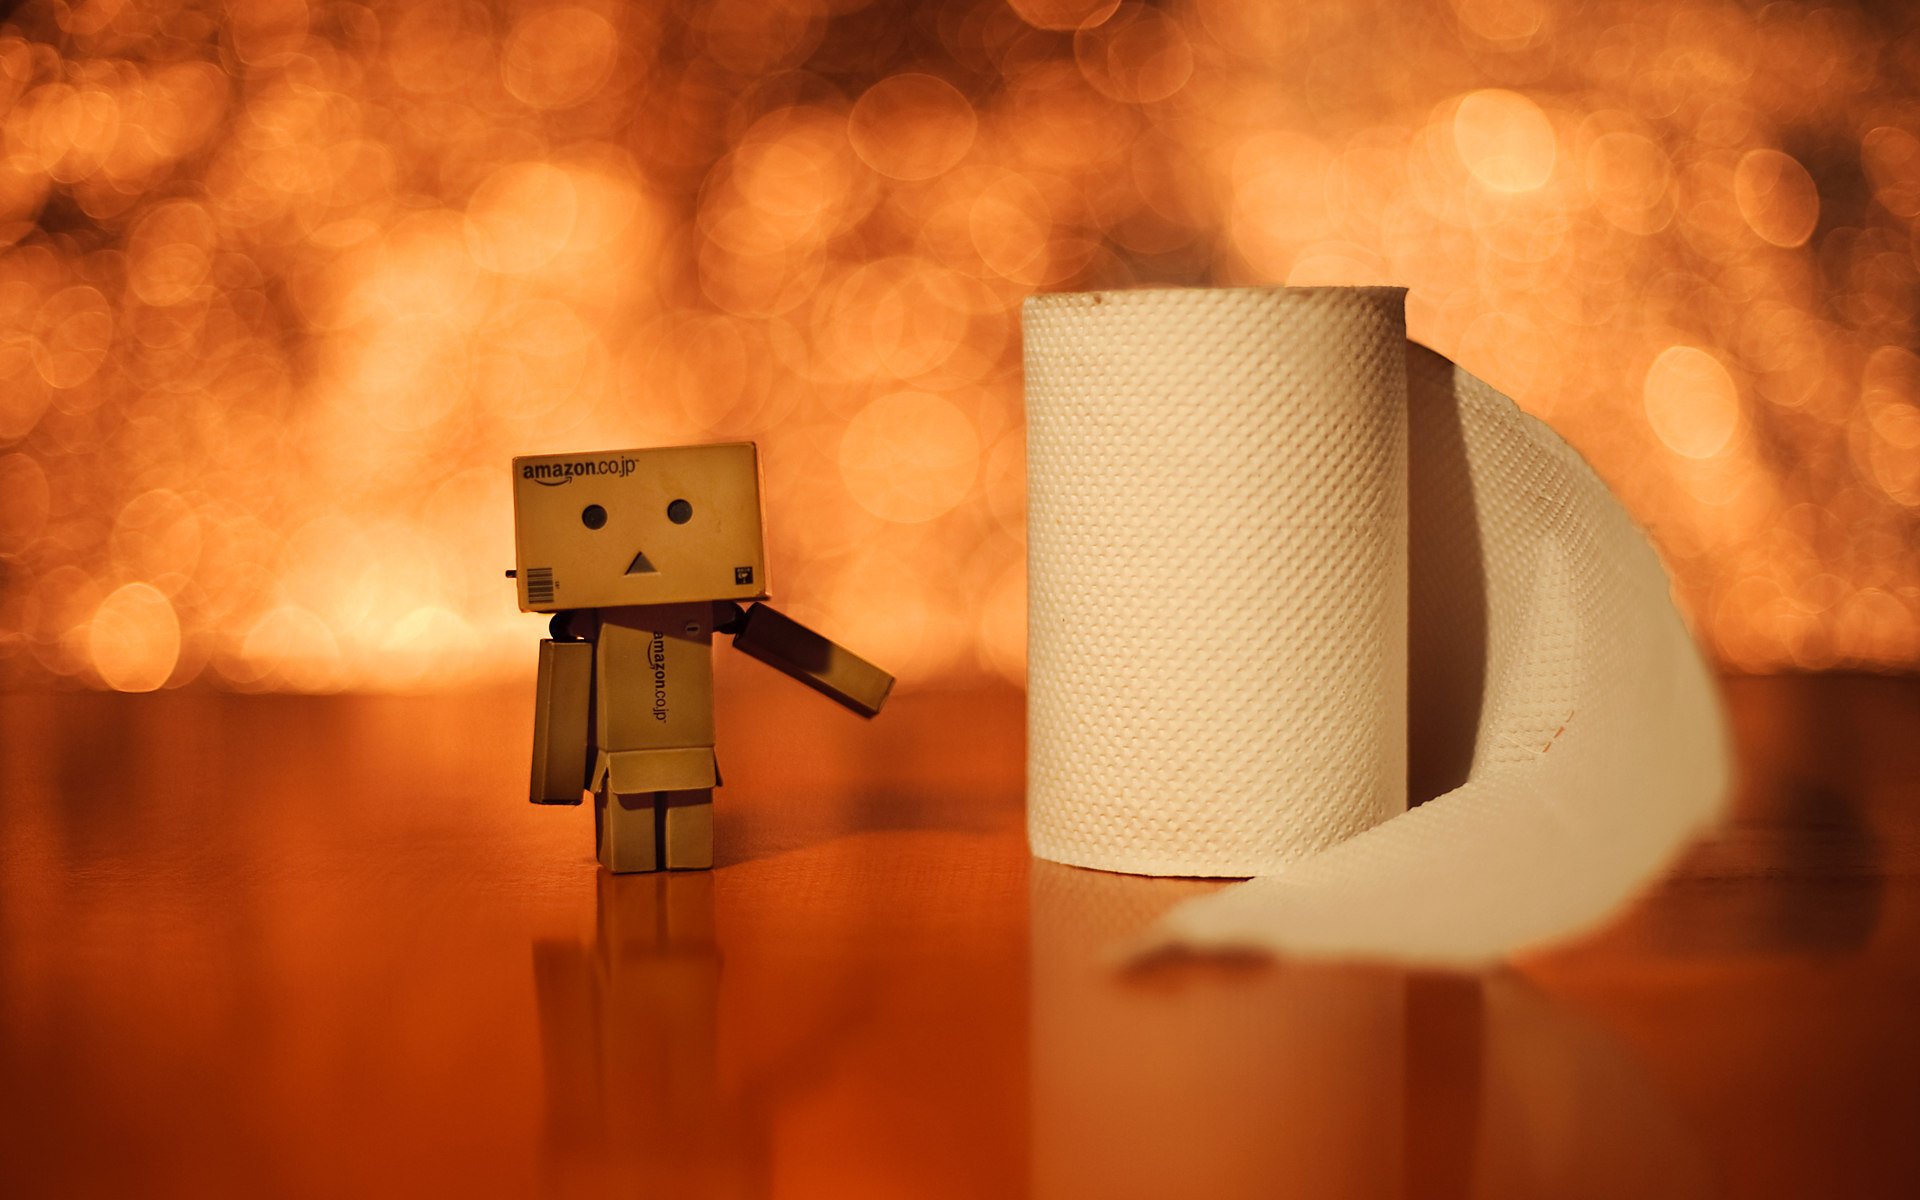 Картонный человечек стоит рядом с рулоном туалетной бумаги